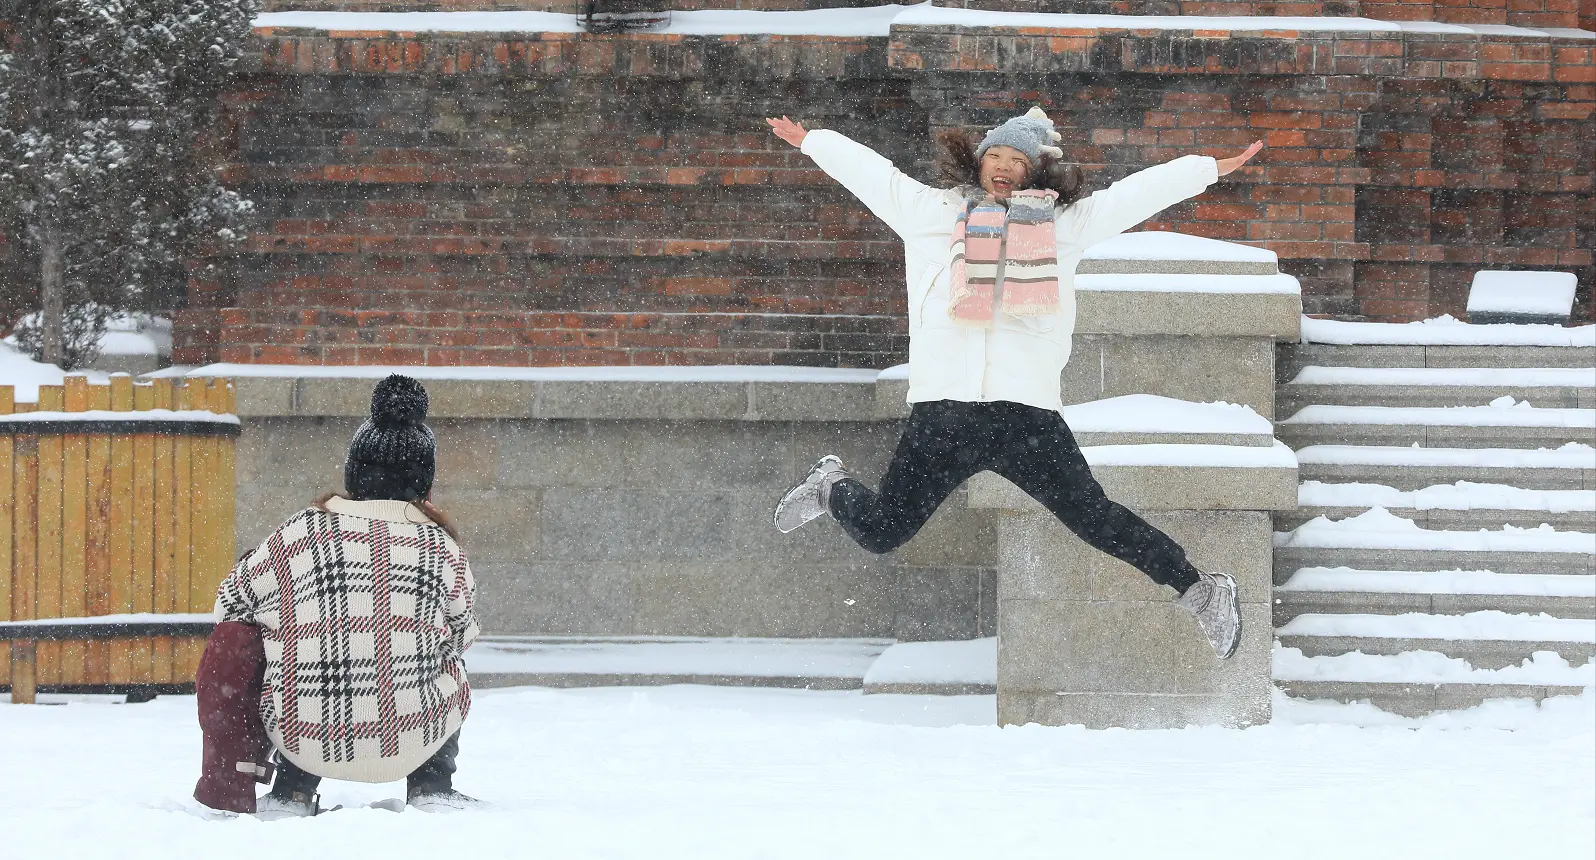 冰城降雪 市民游客又玩嗨了